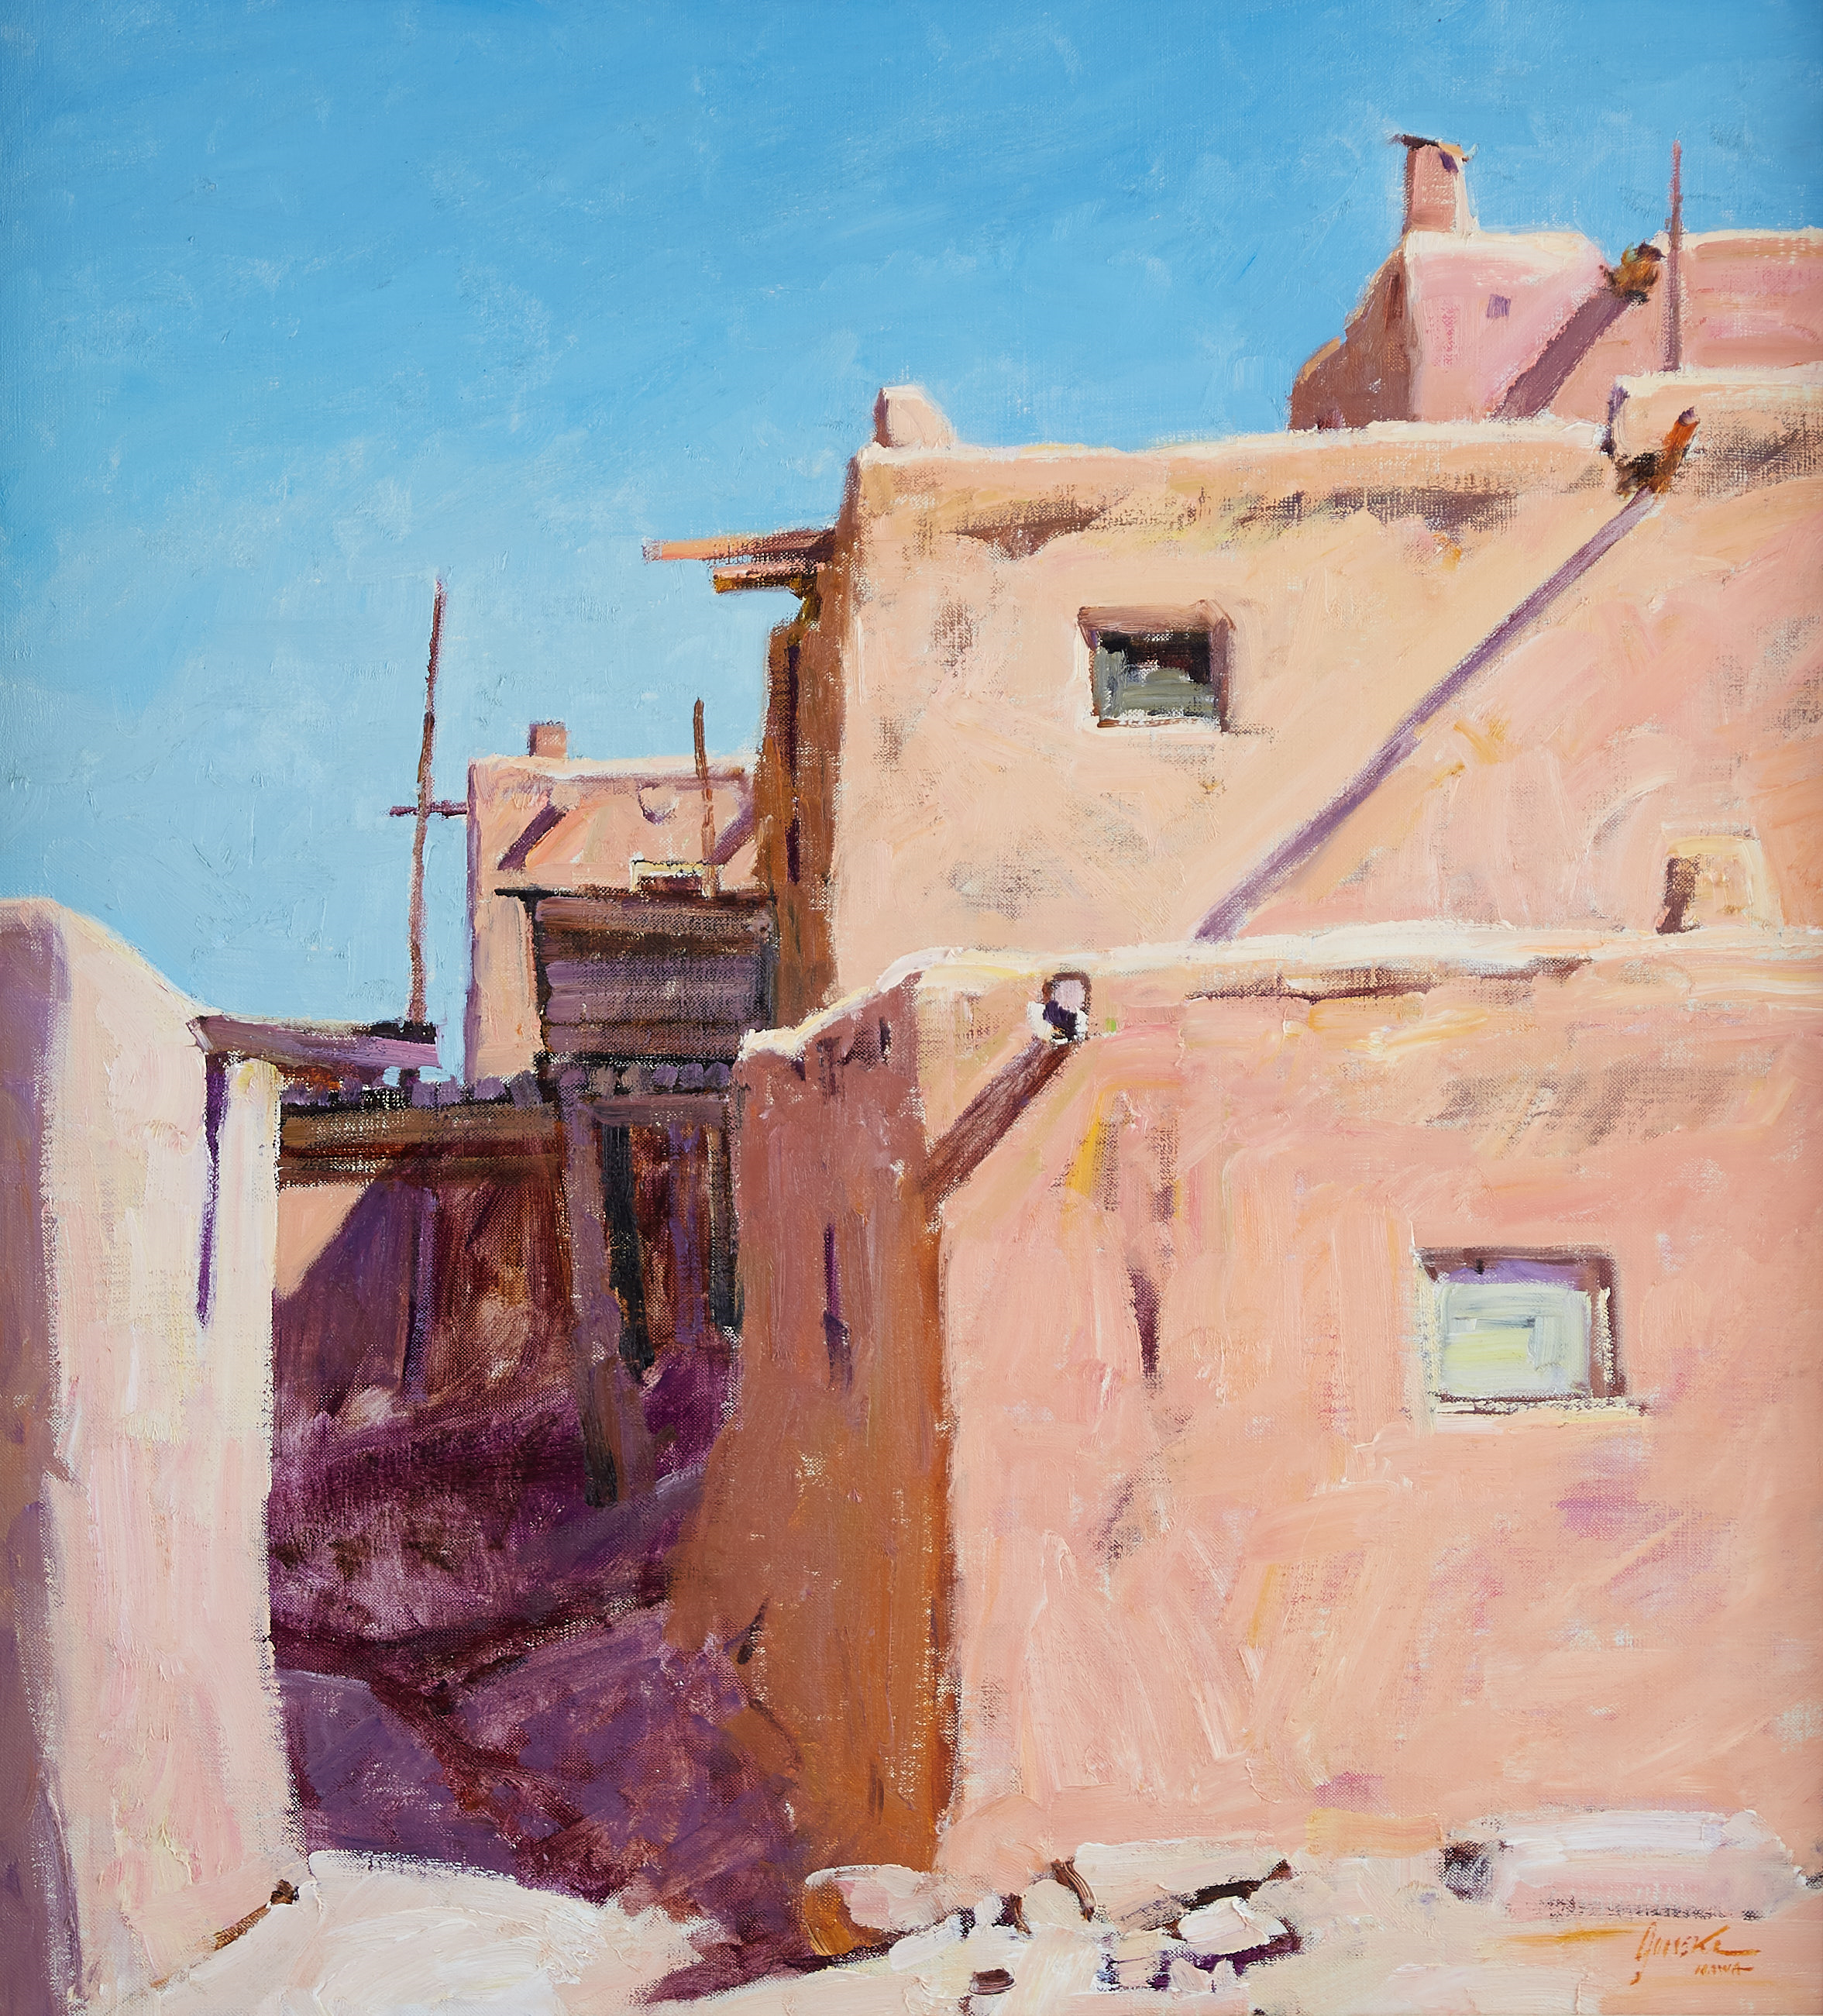 Lot 073: Walt Gonske "Taos Pueblo" Oil on Canvas